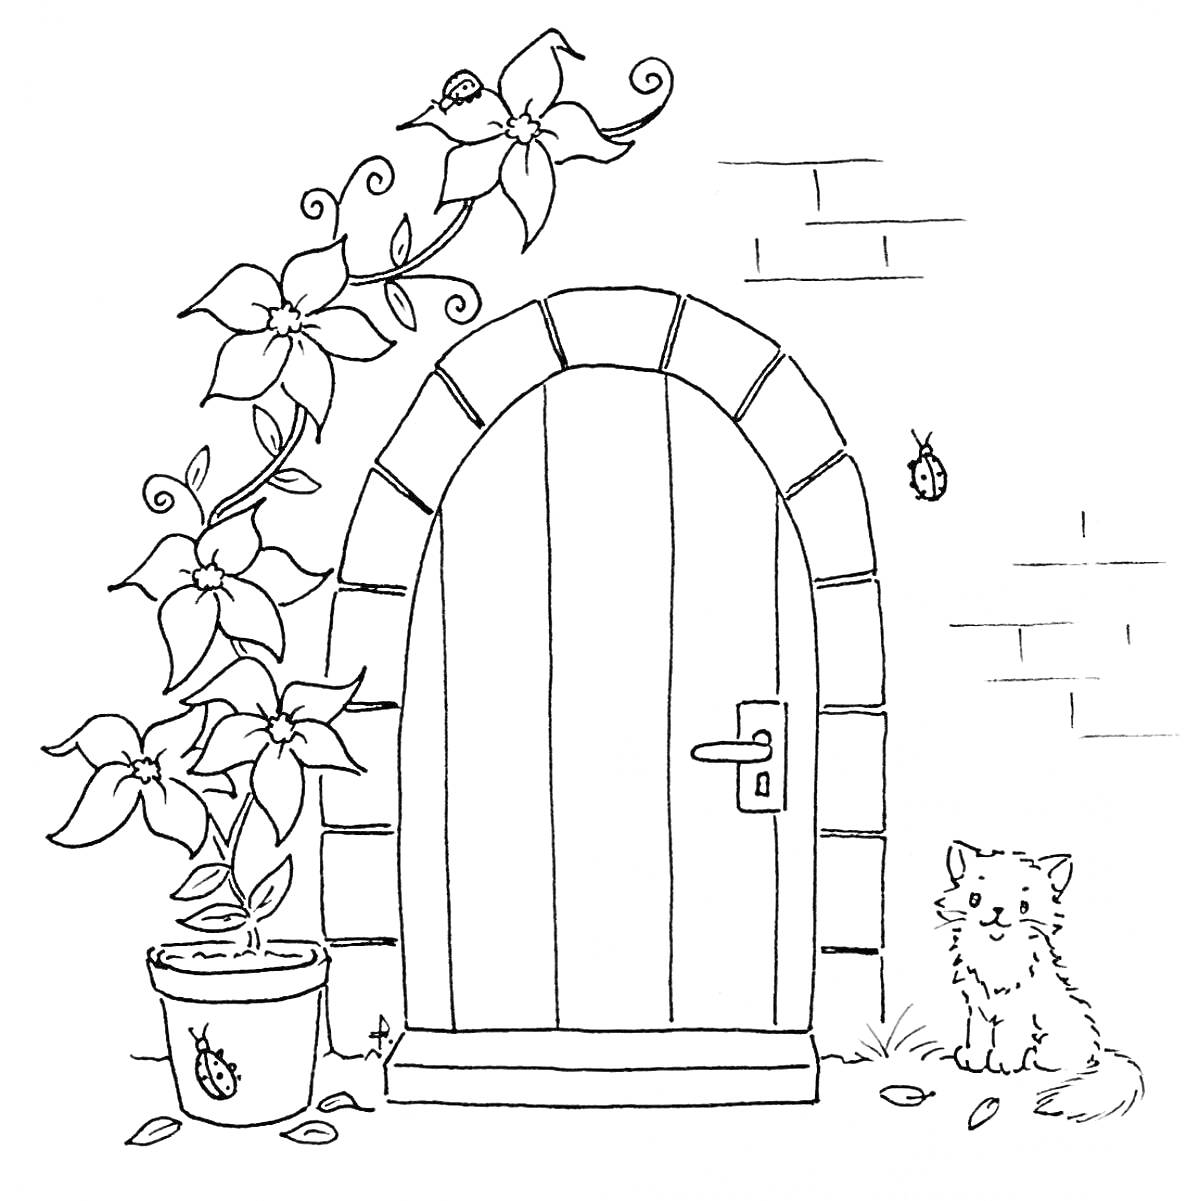 Раскраска Дверь в арке с плющом, горшок с цветами, котенок и бабочки